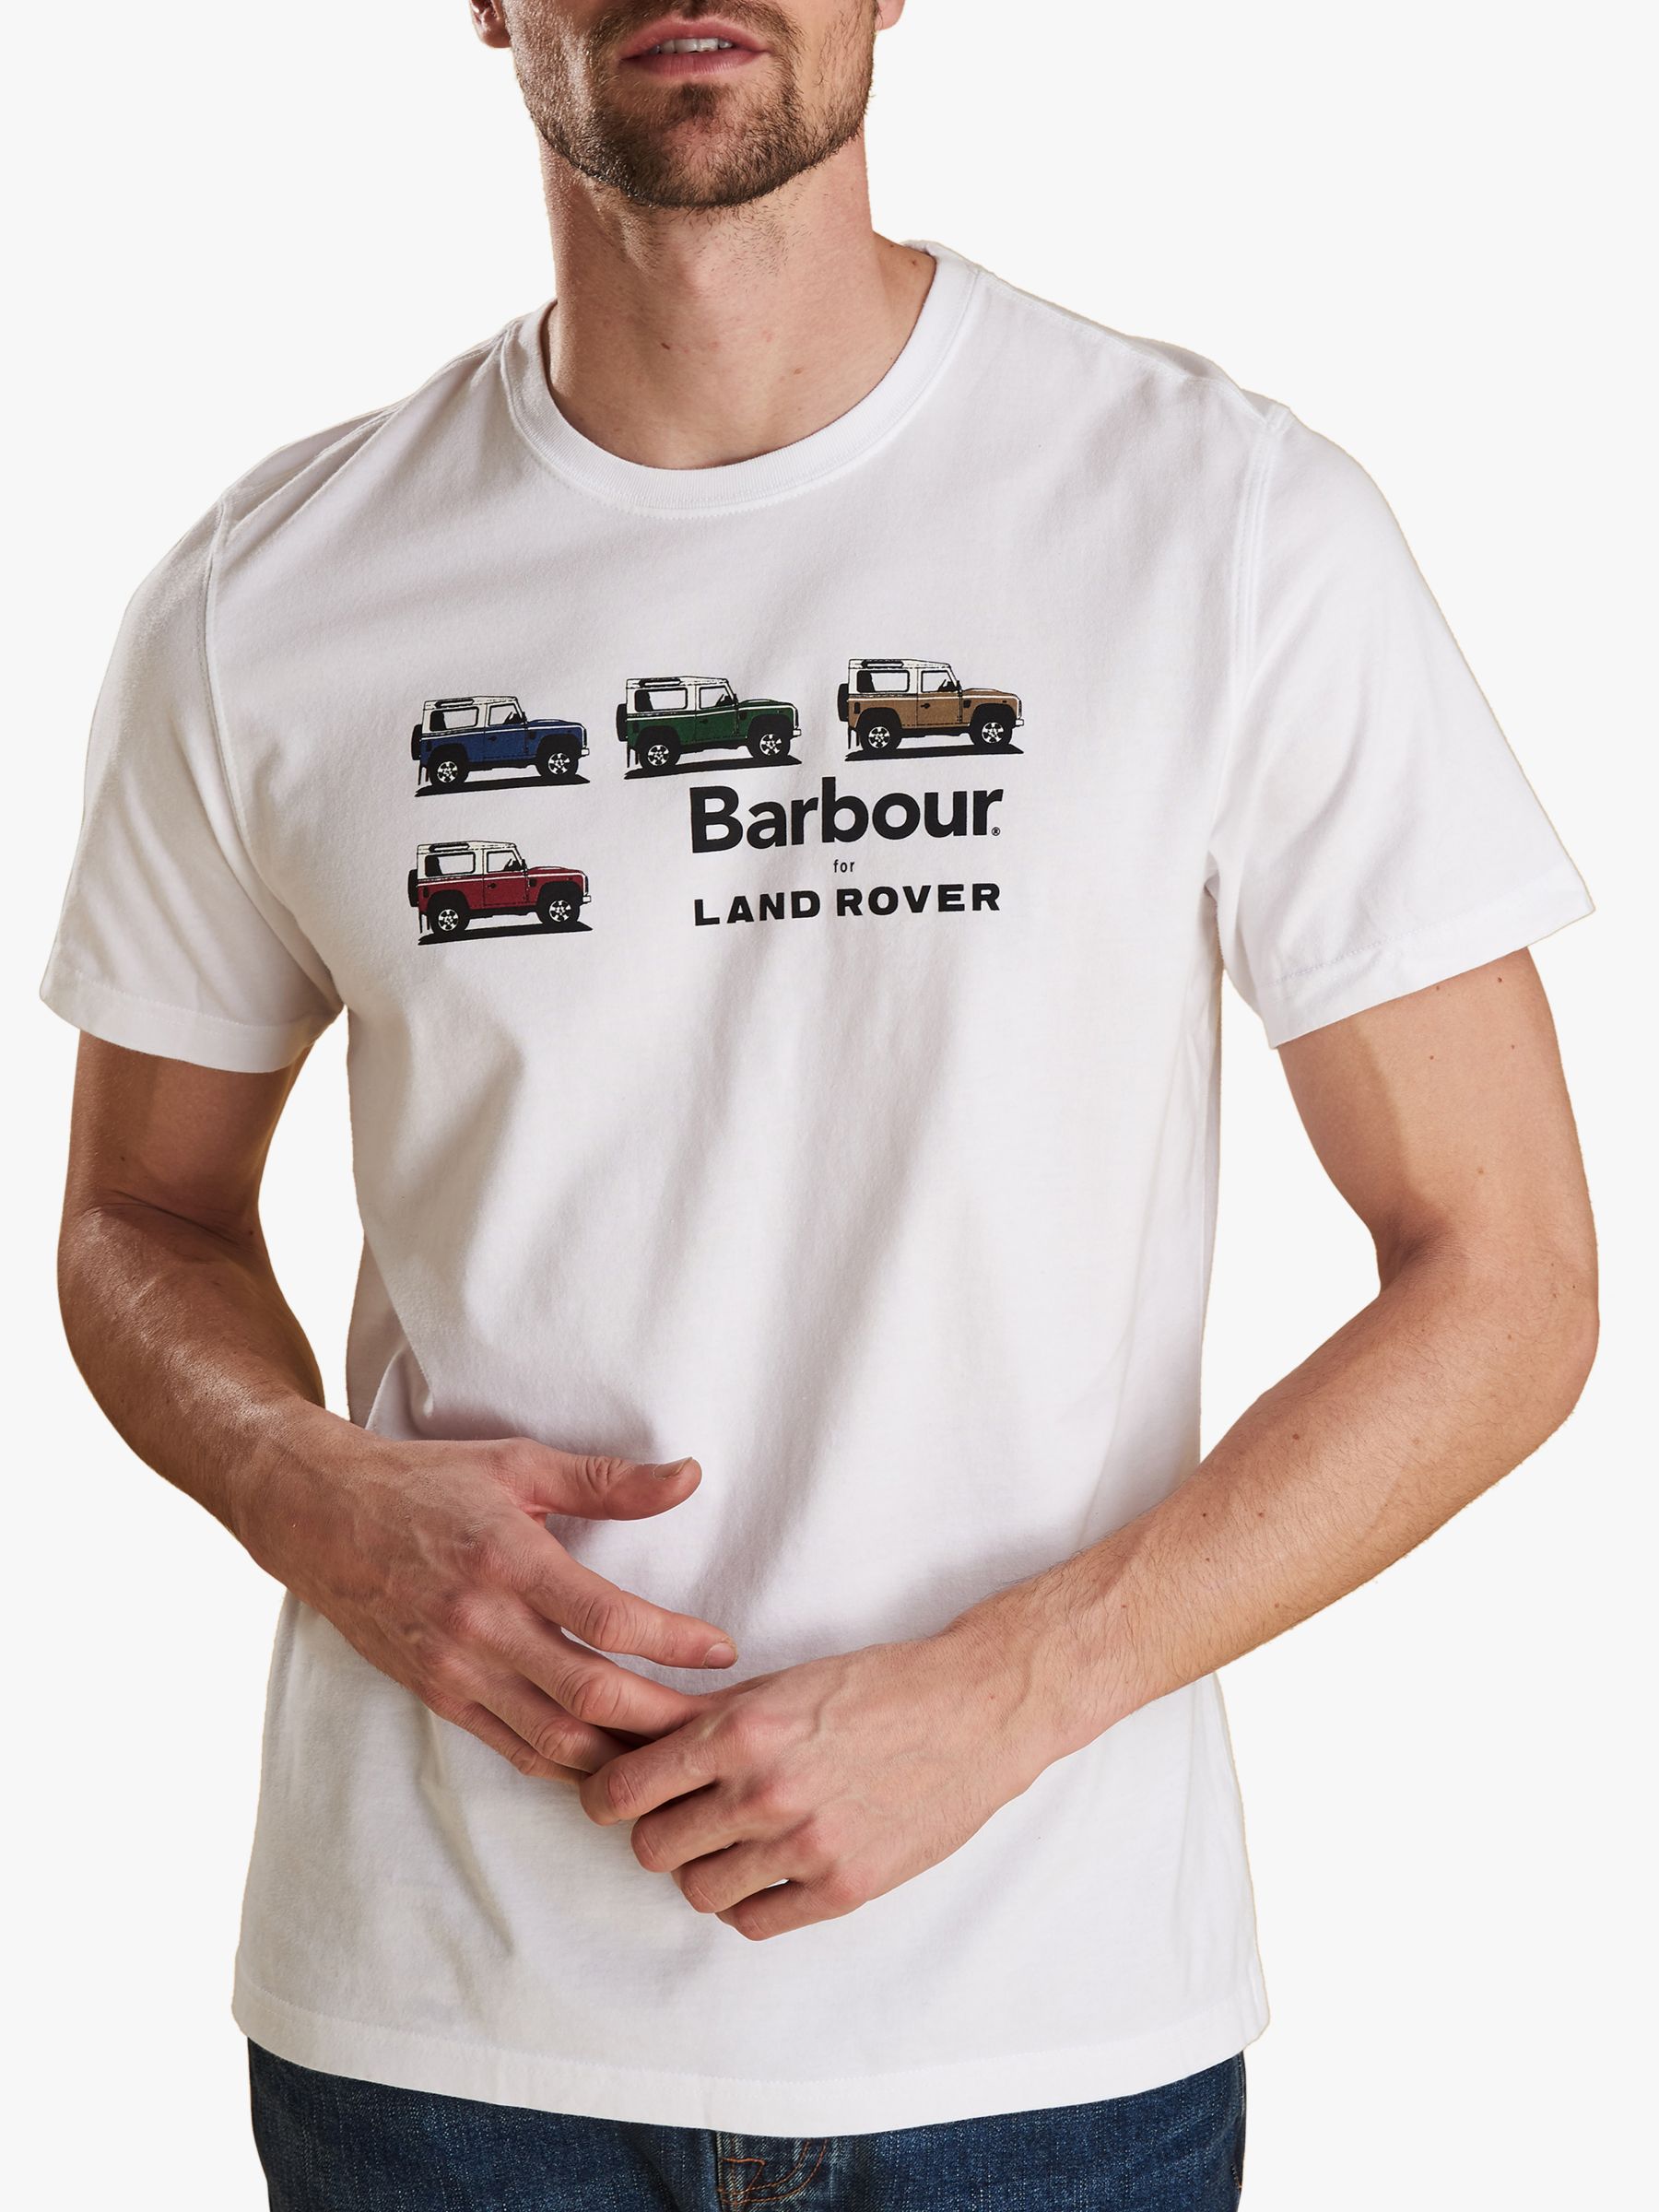 barbour defender t shirt online